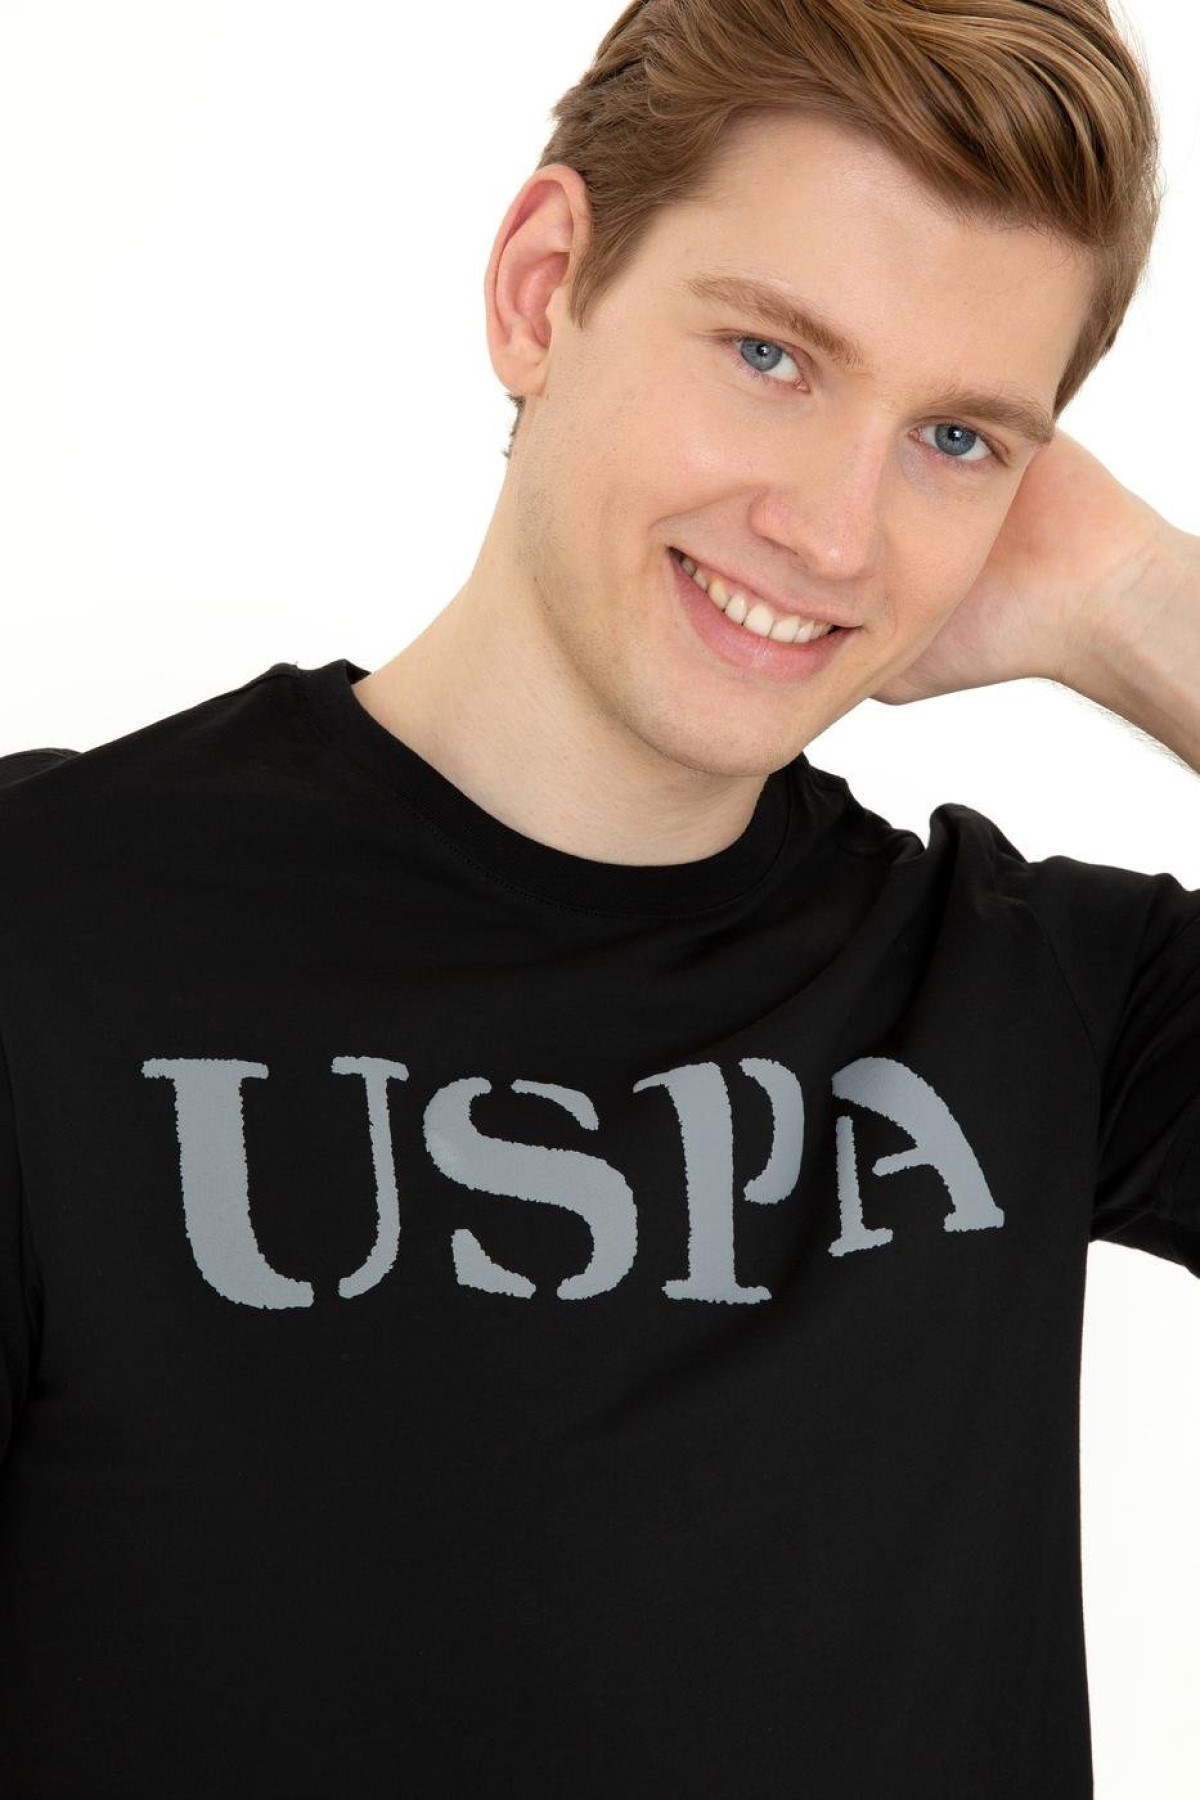 US Polo Assn Erkek T-Shirt G081SZ011-1350567 Sıyah